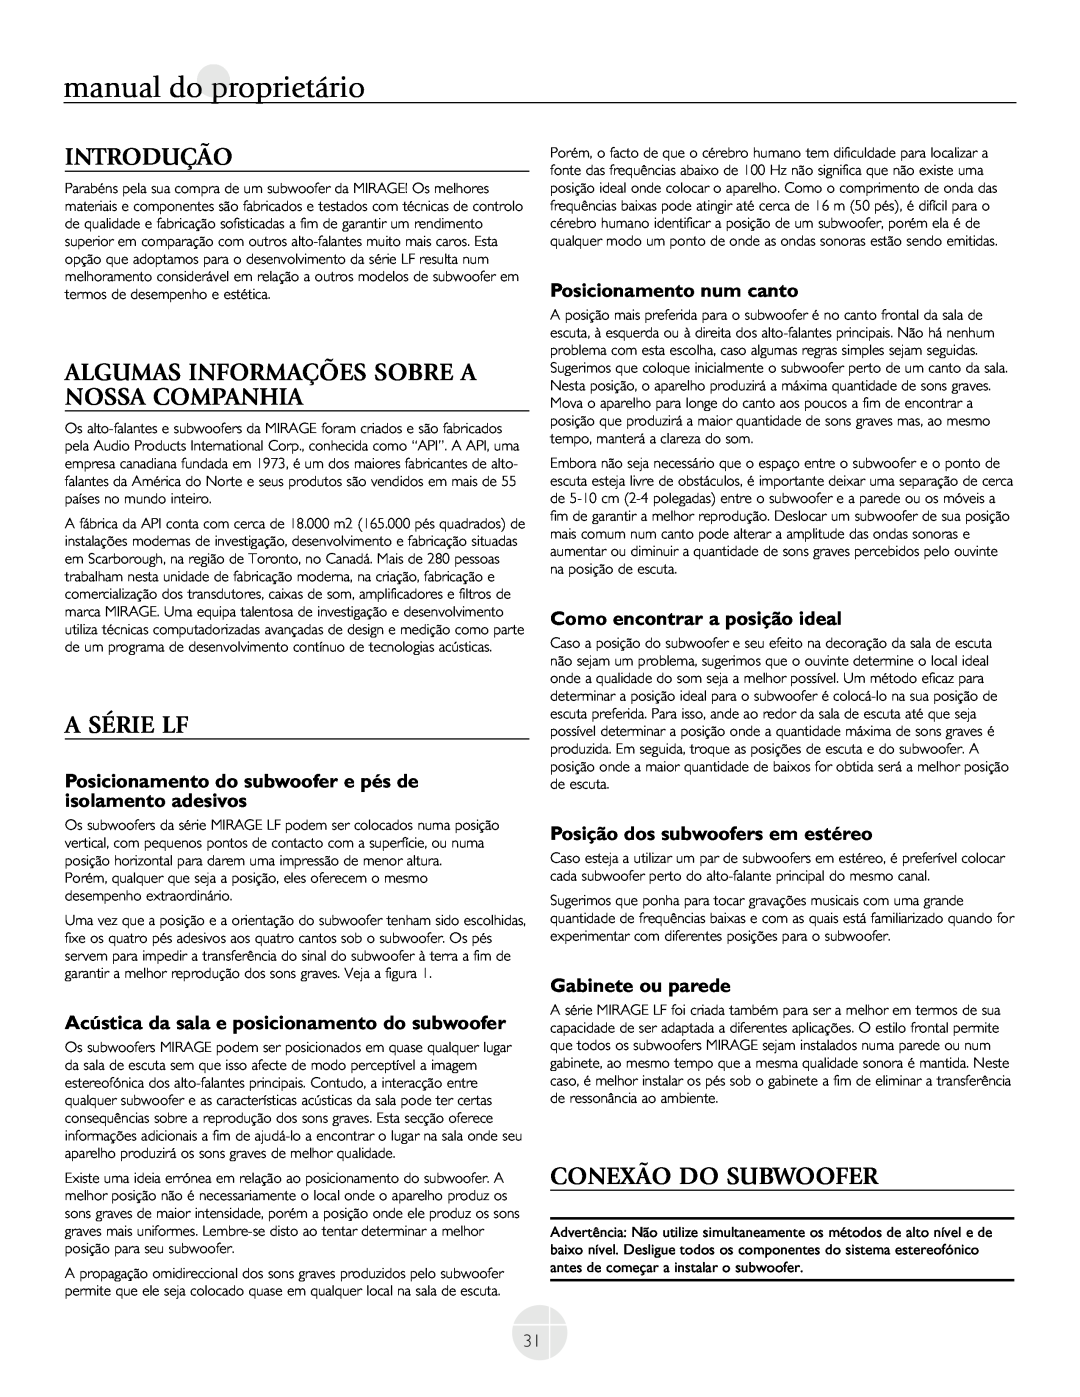 Mirage Loudspeakers LF-150 Introdução, Algumas Informações Sobre A Nossa Companhia, A Série Lf, Conexão Do Subwoofer 